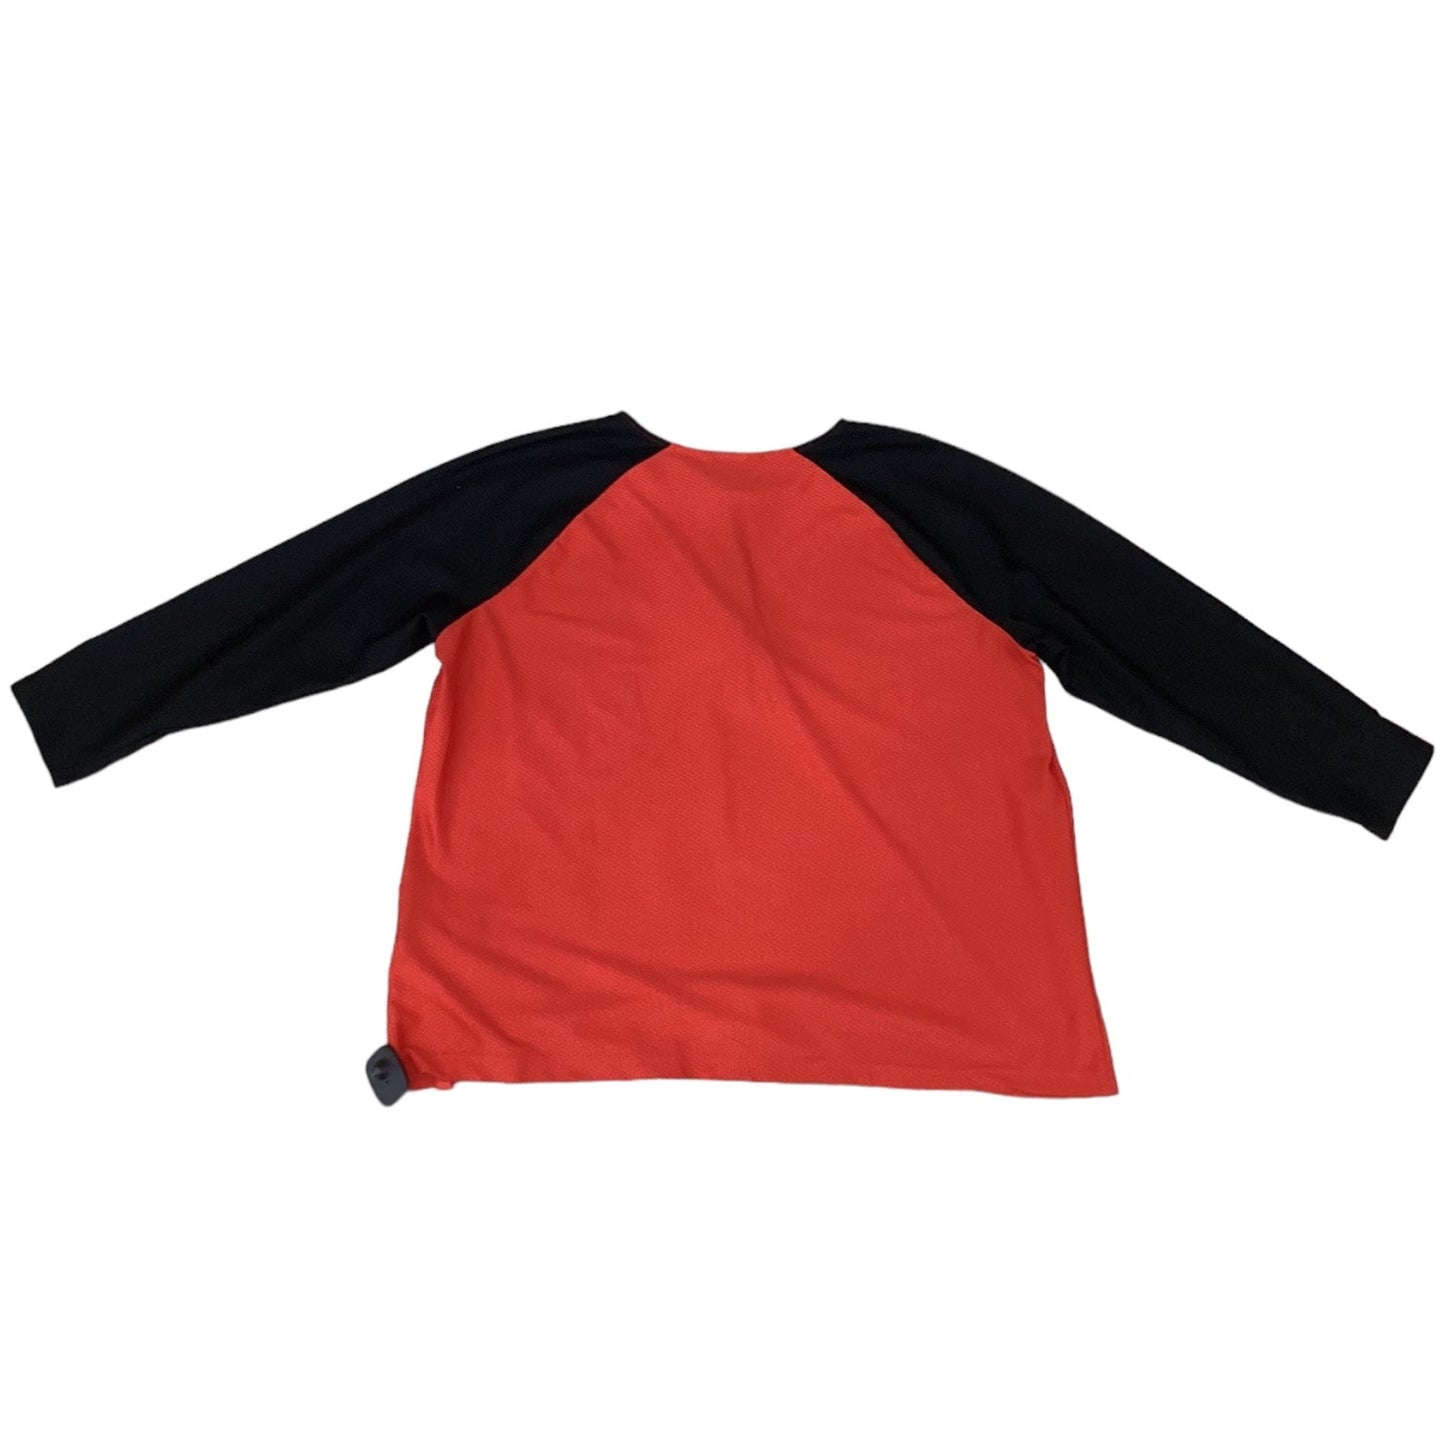 Black & Red Top Long Sleeve Designer Lauren By Ralph Lauren, Size 3x